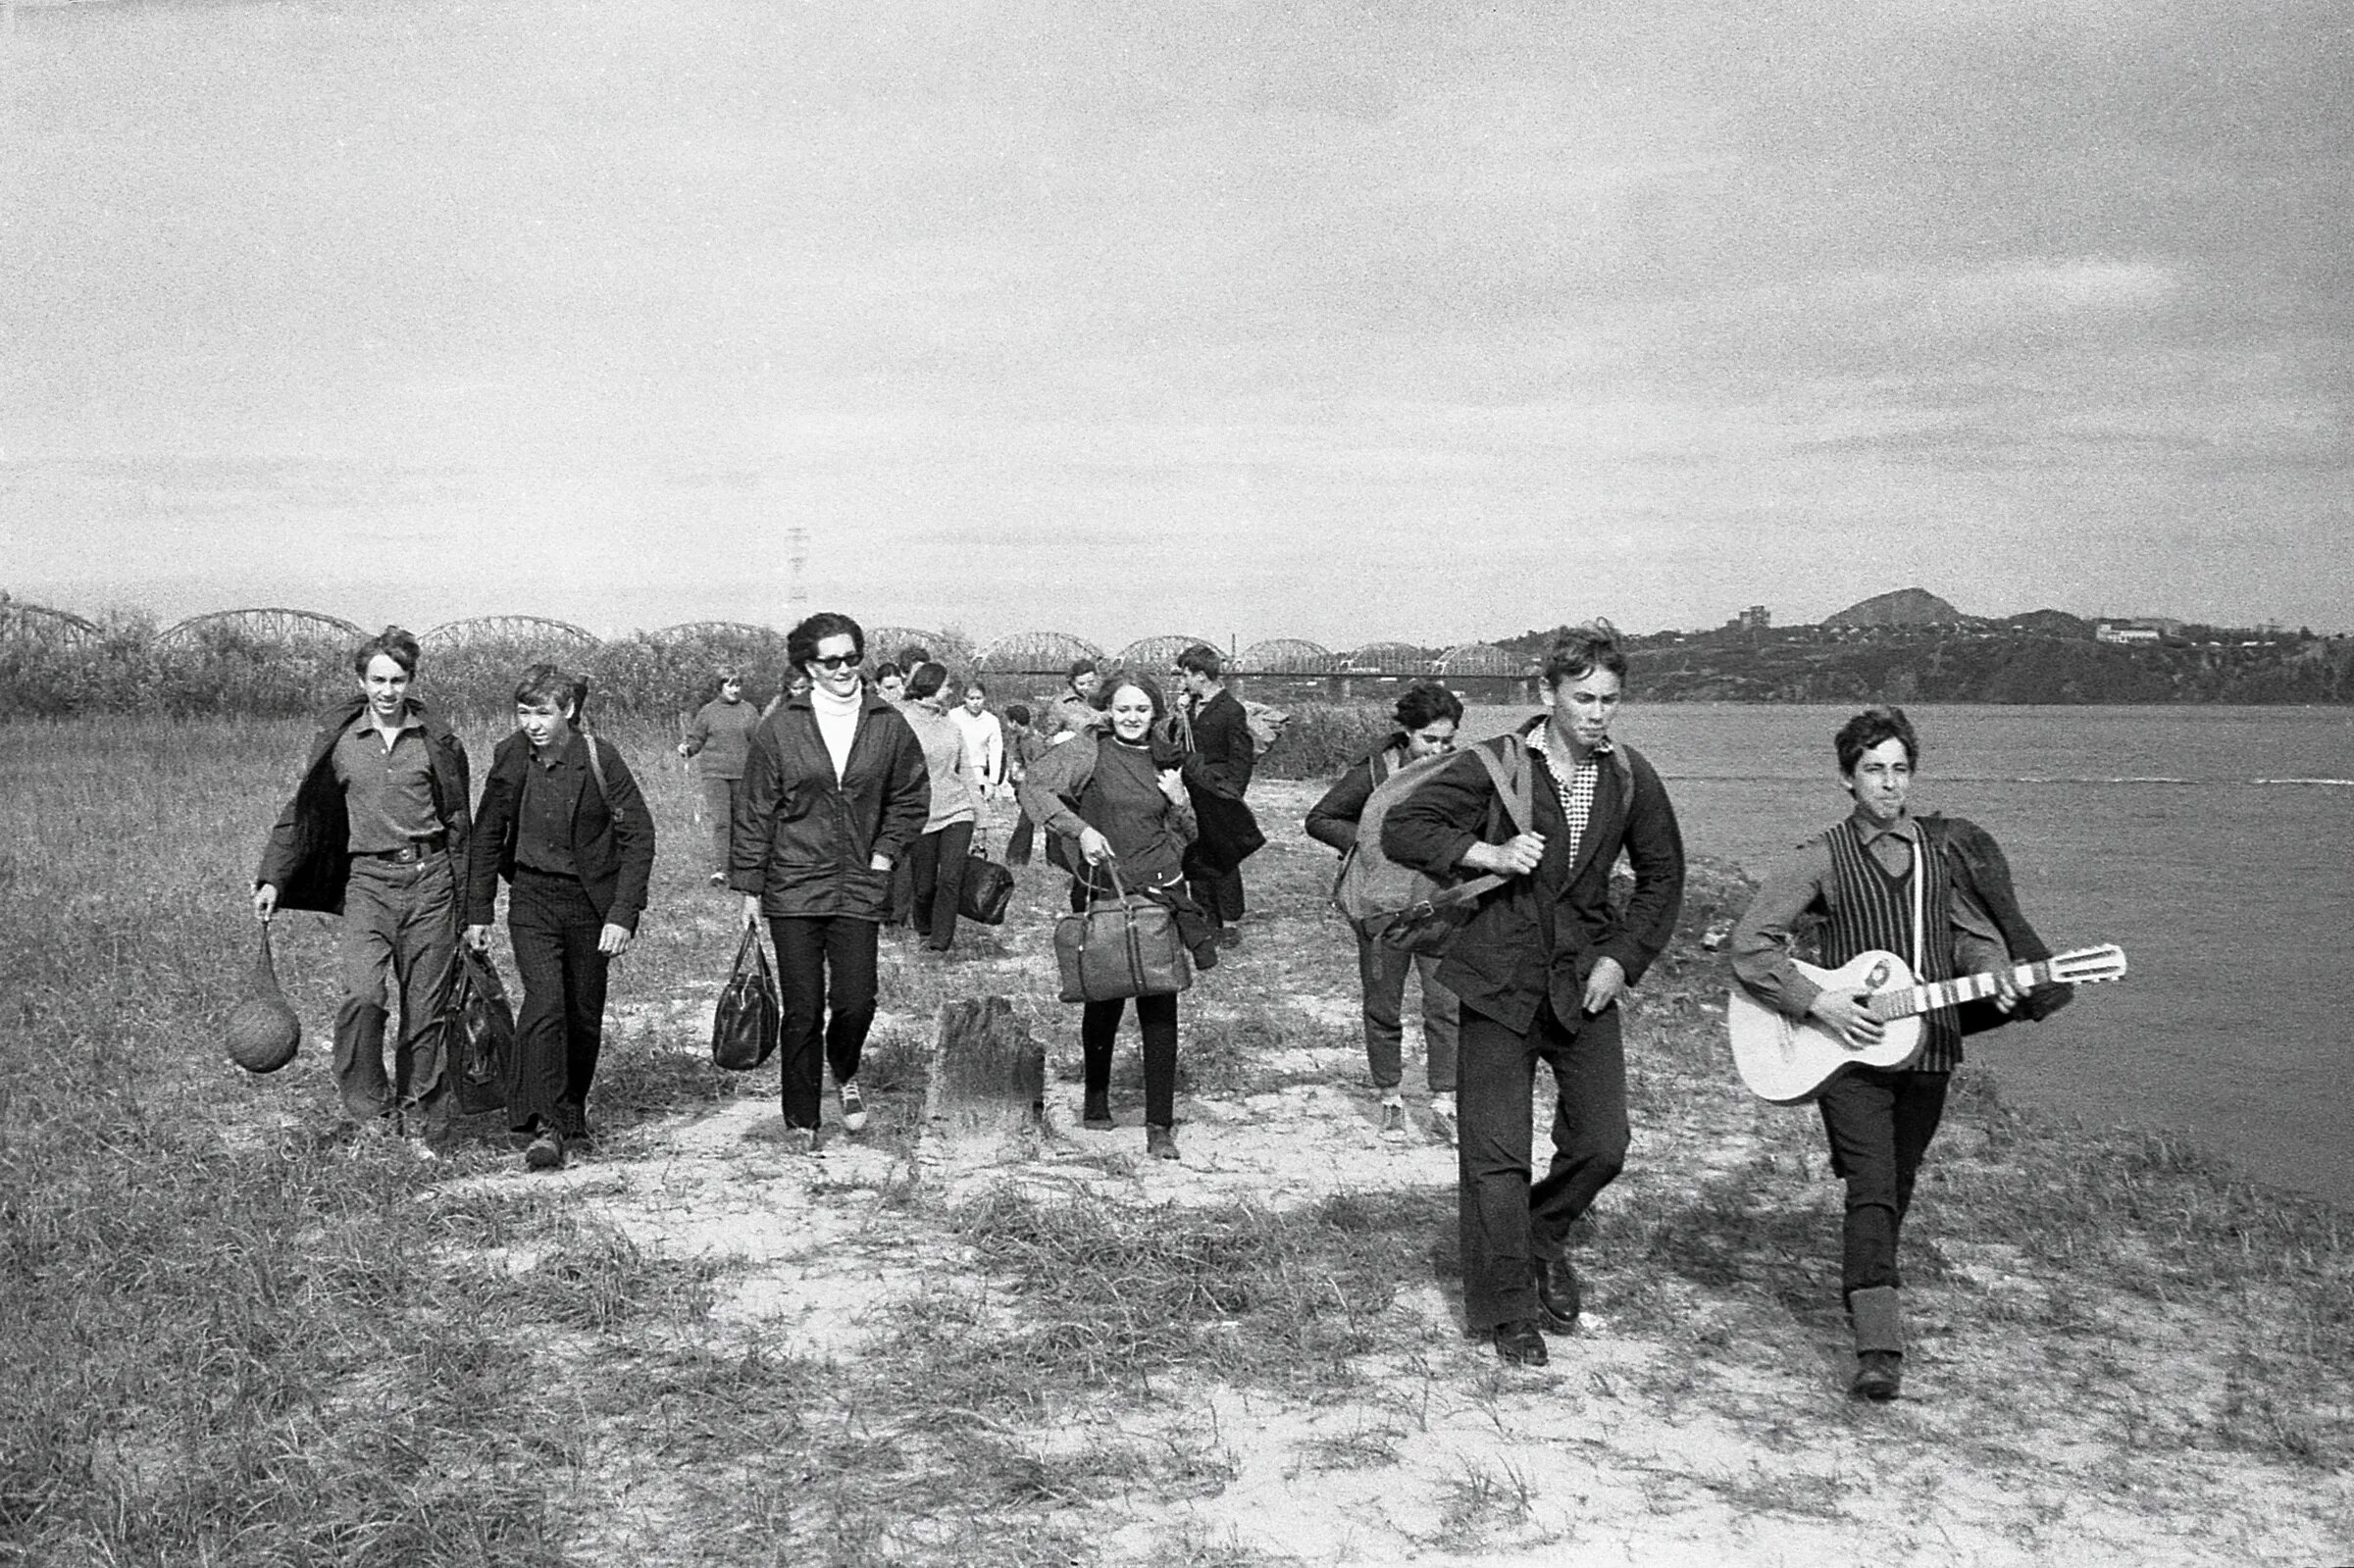 Фото 1971 года. С гурьбой и гуртом сайт. Рок-группа левый берег. Необычные фотографии 1971 года.